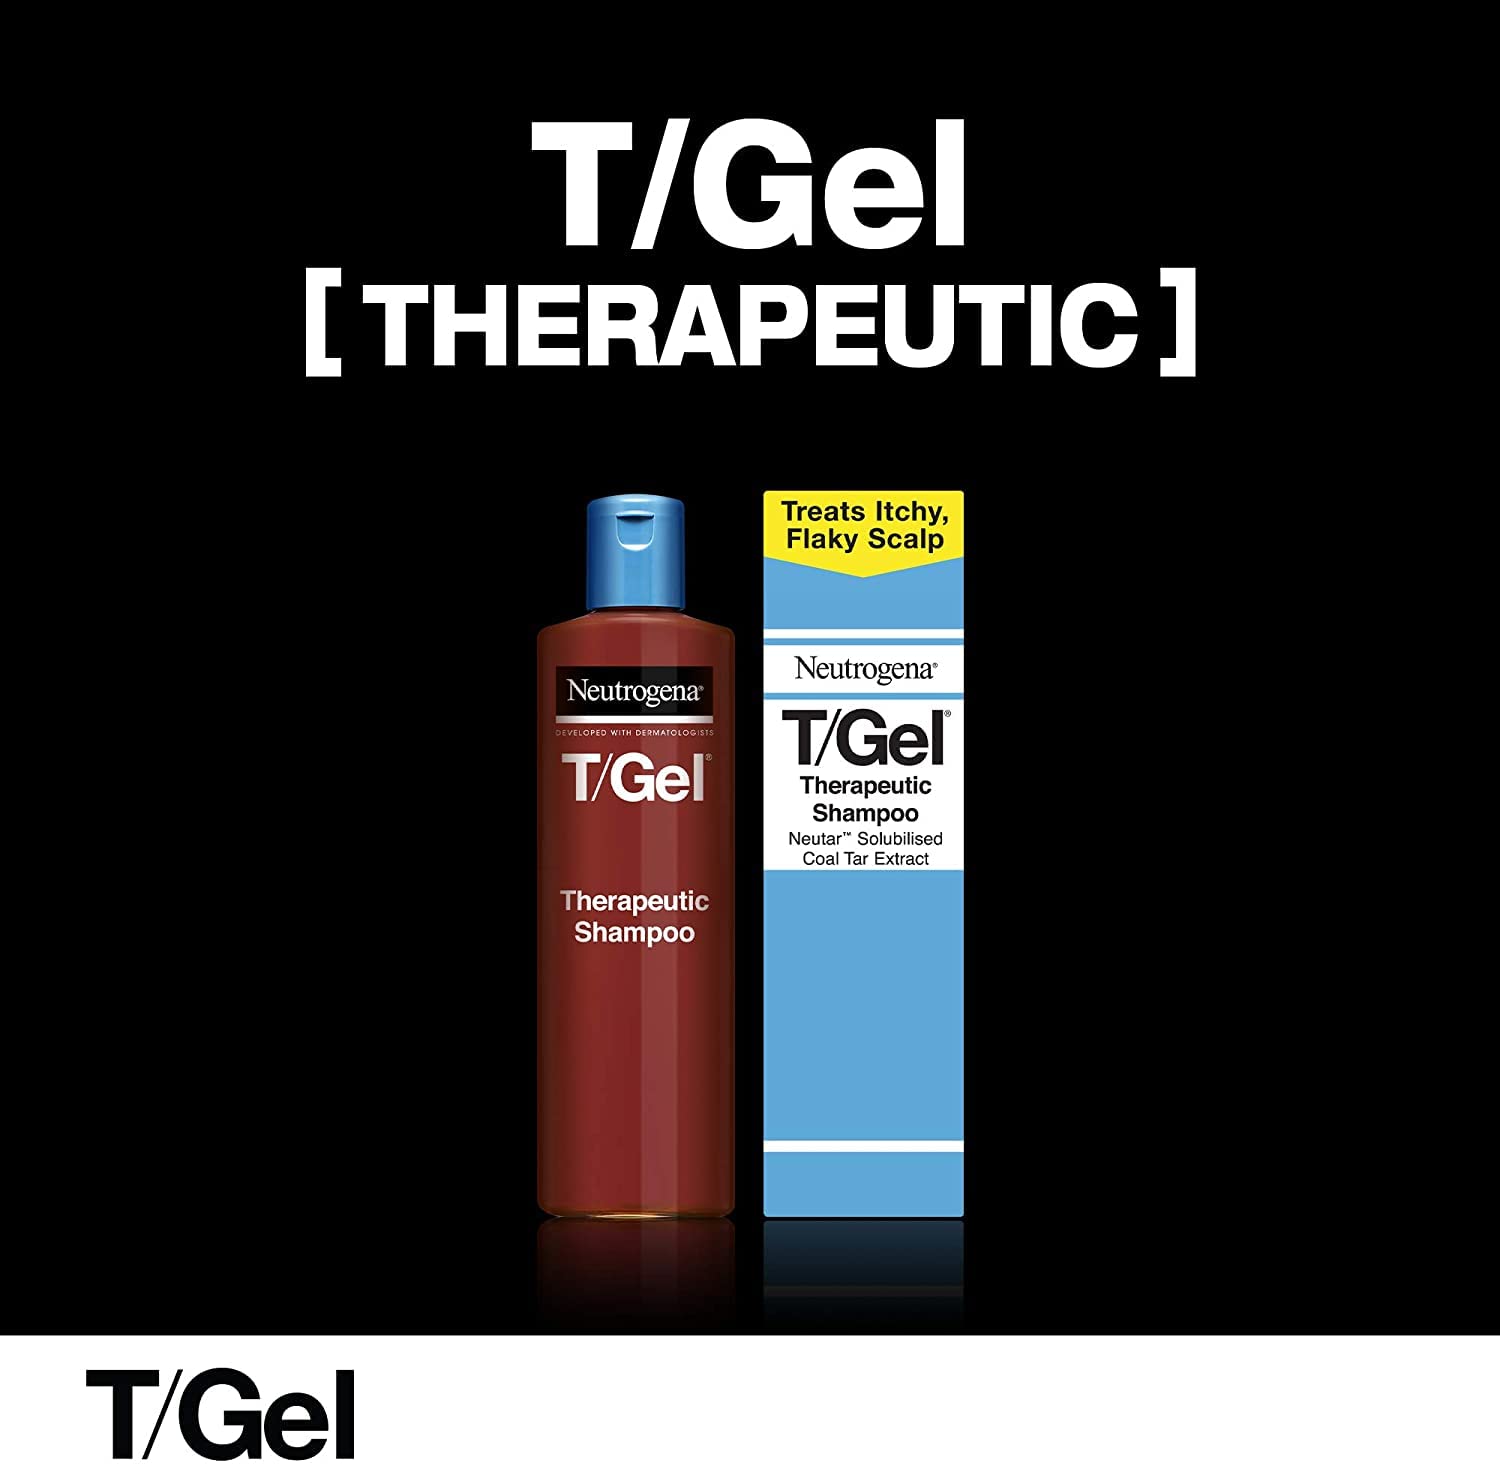 Neutrogena T Gel Therapeutic Shampoo